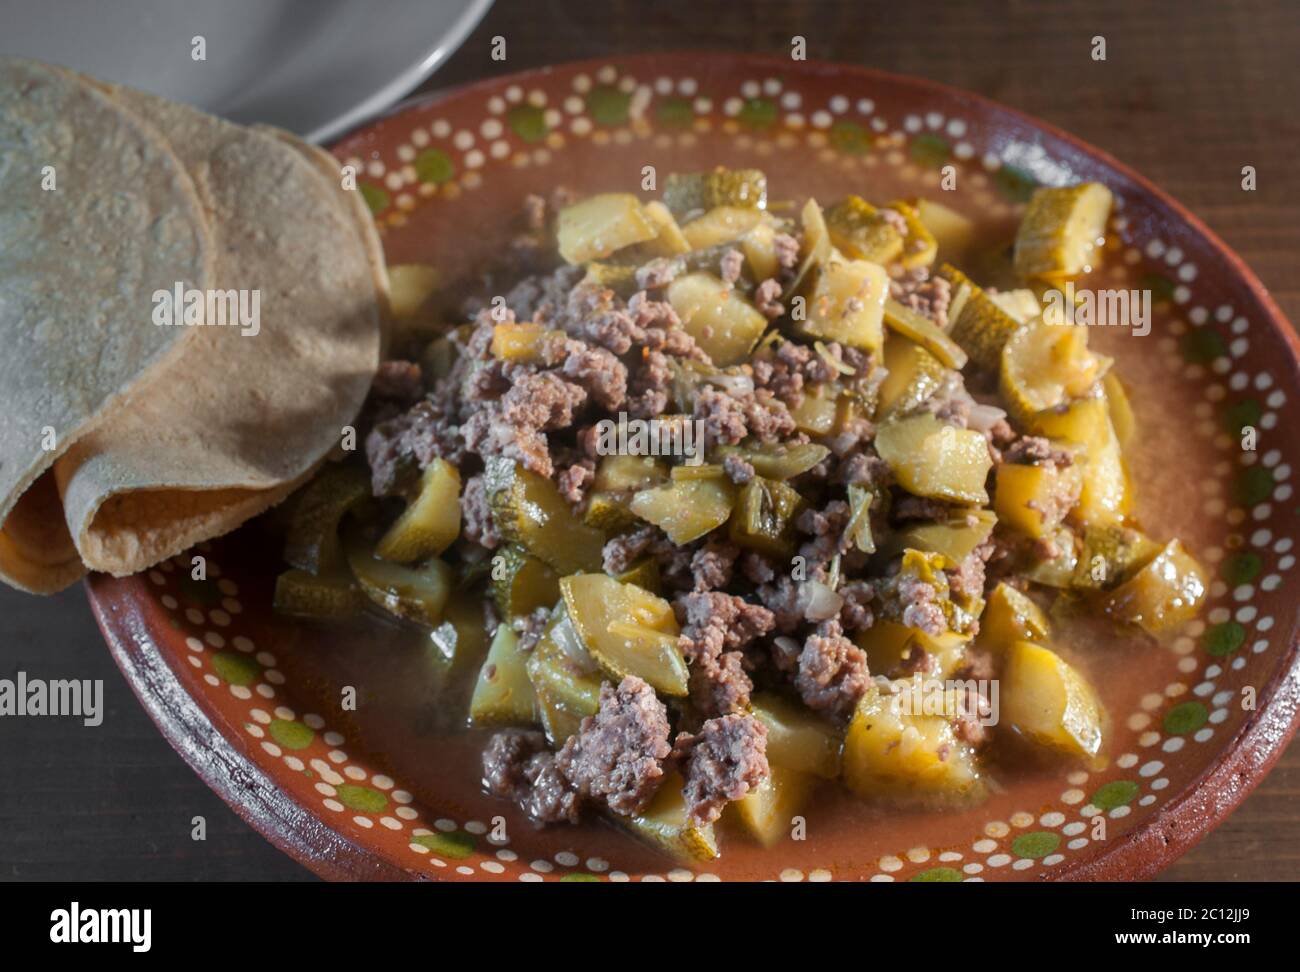 Nahaufnahme Bild der traditionellen mexikanischen Küche, Rindfleisch oder Fleisch PICADILLO mit Zucchini Zwiebeln und Paprika mit Tortillas auf der Seite Stockfoto